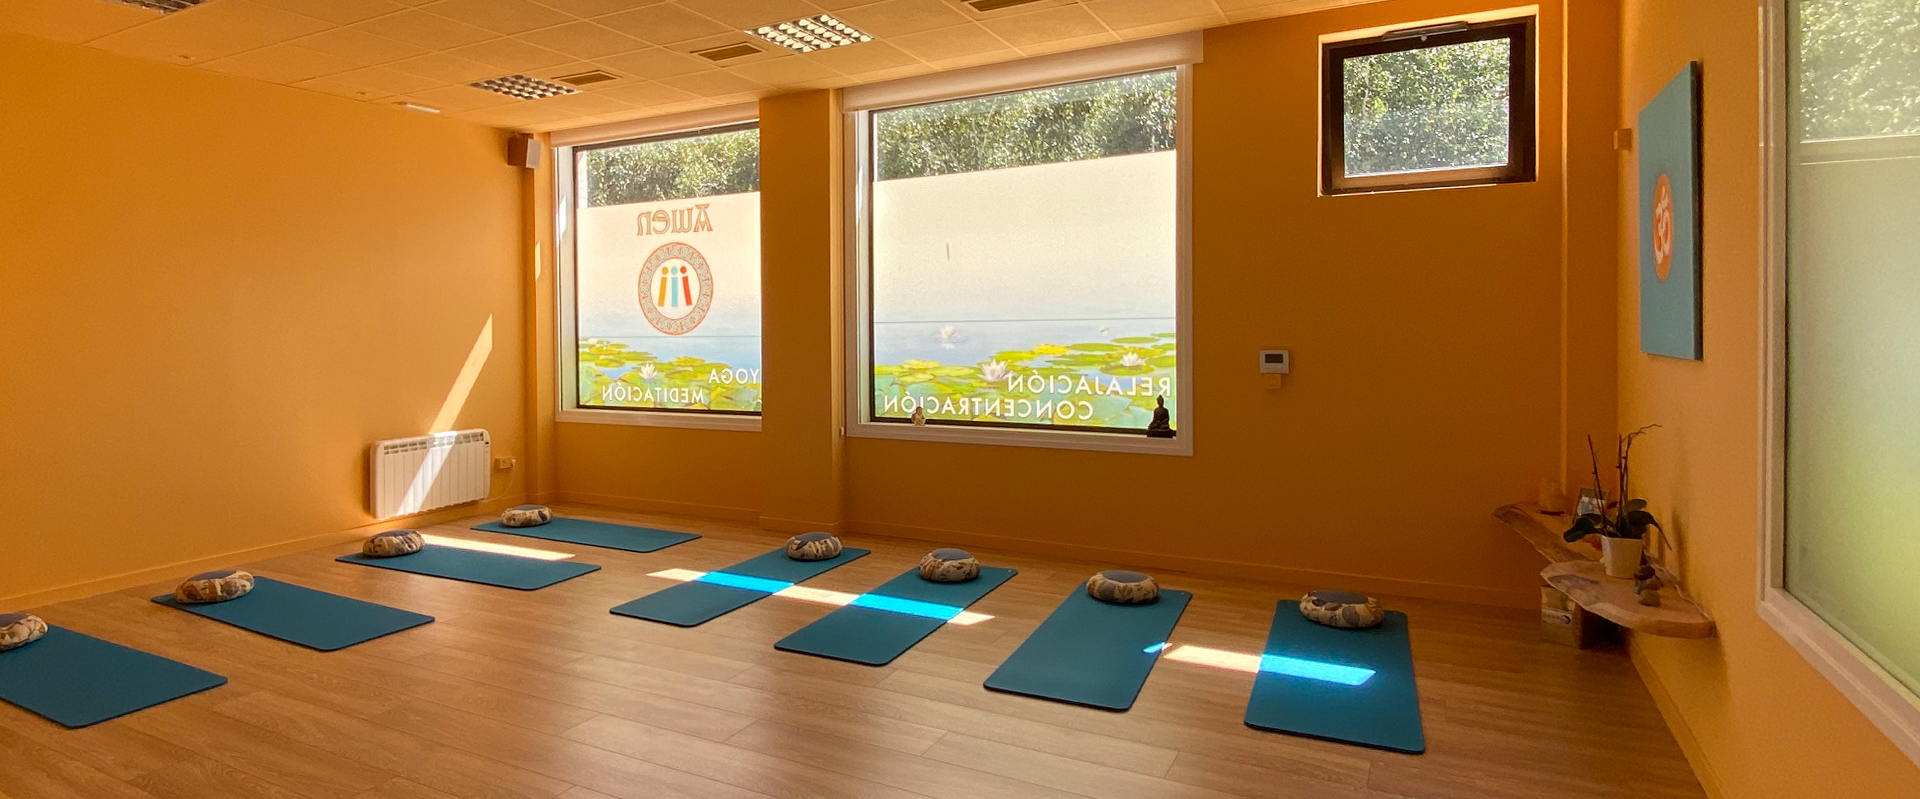 Awen Yoga - Centro de equilibrio humano